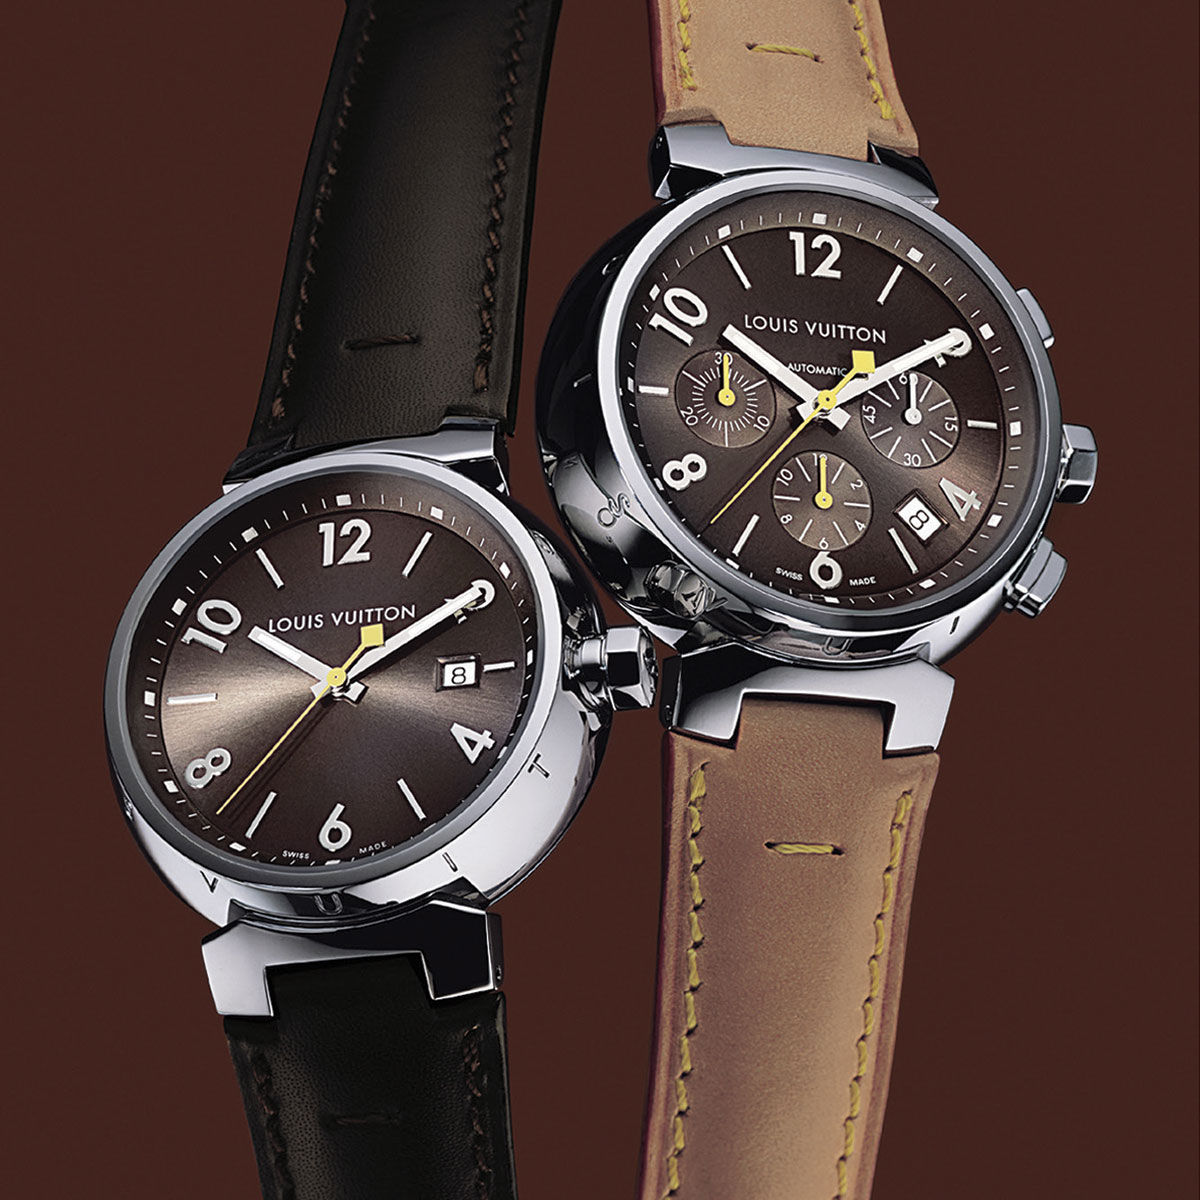 Phiên bản đồng hồ Louis Vuitton Tambour ra mắt năm 2002